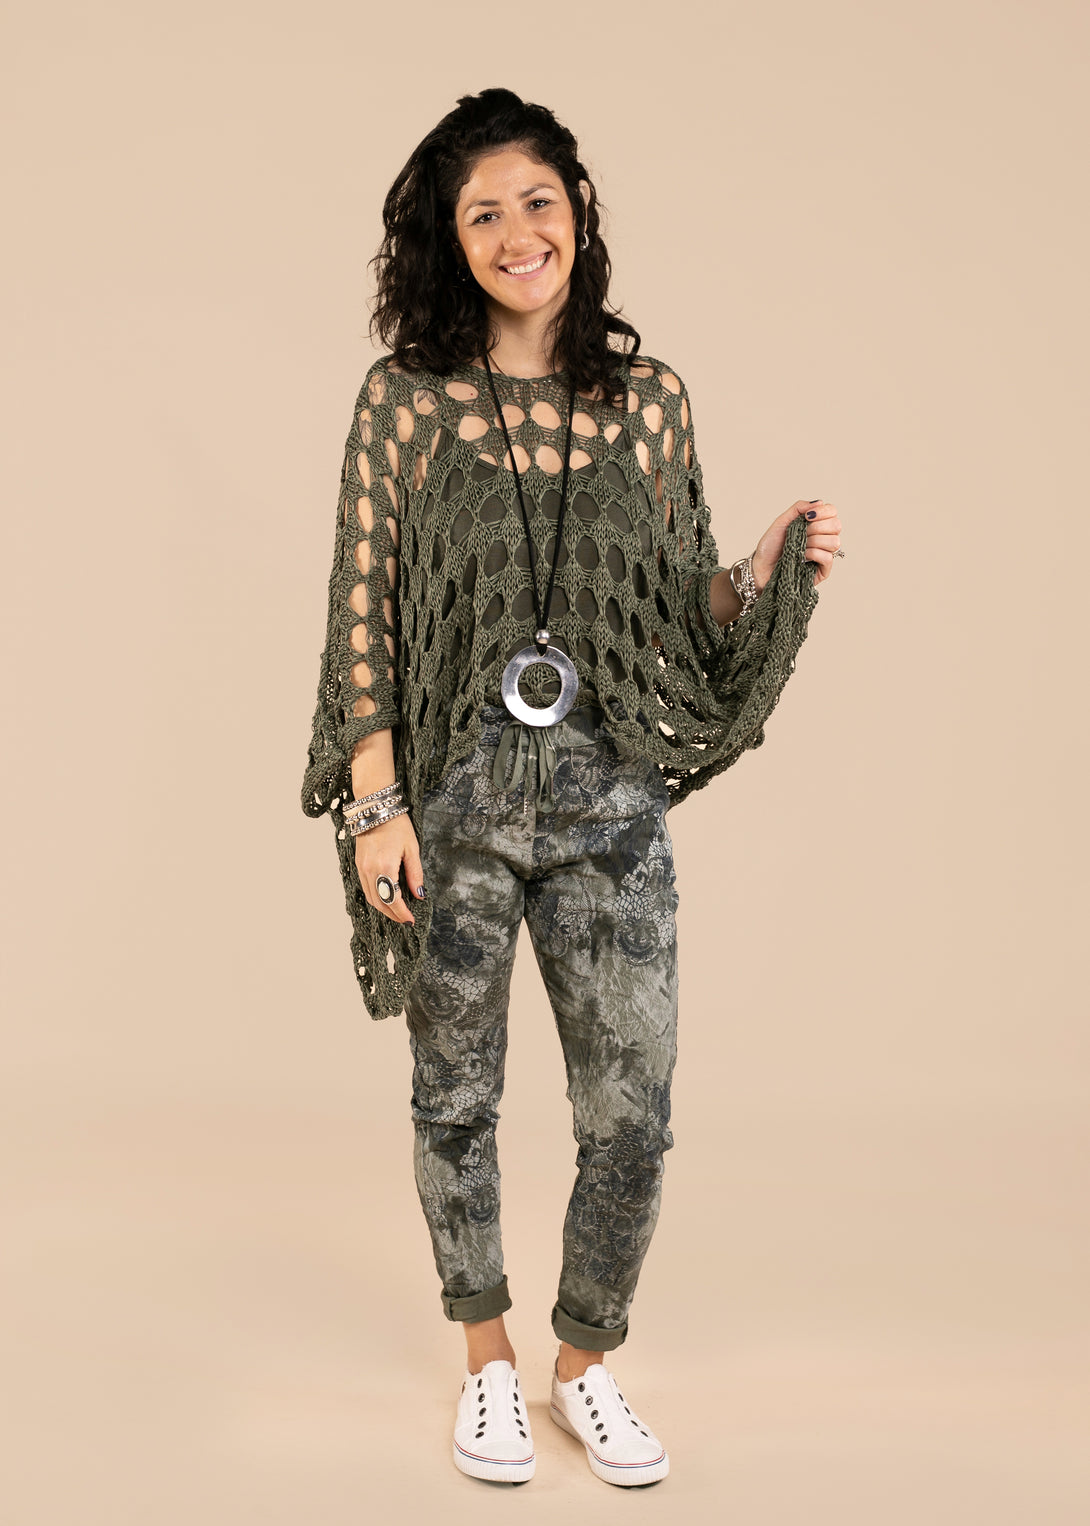 Asha Knit Top in Khaki - Imagine Fashion